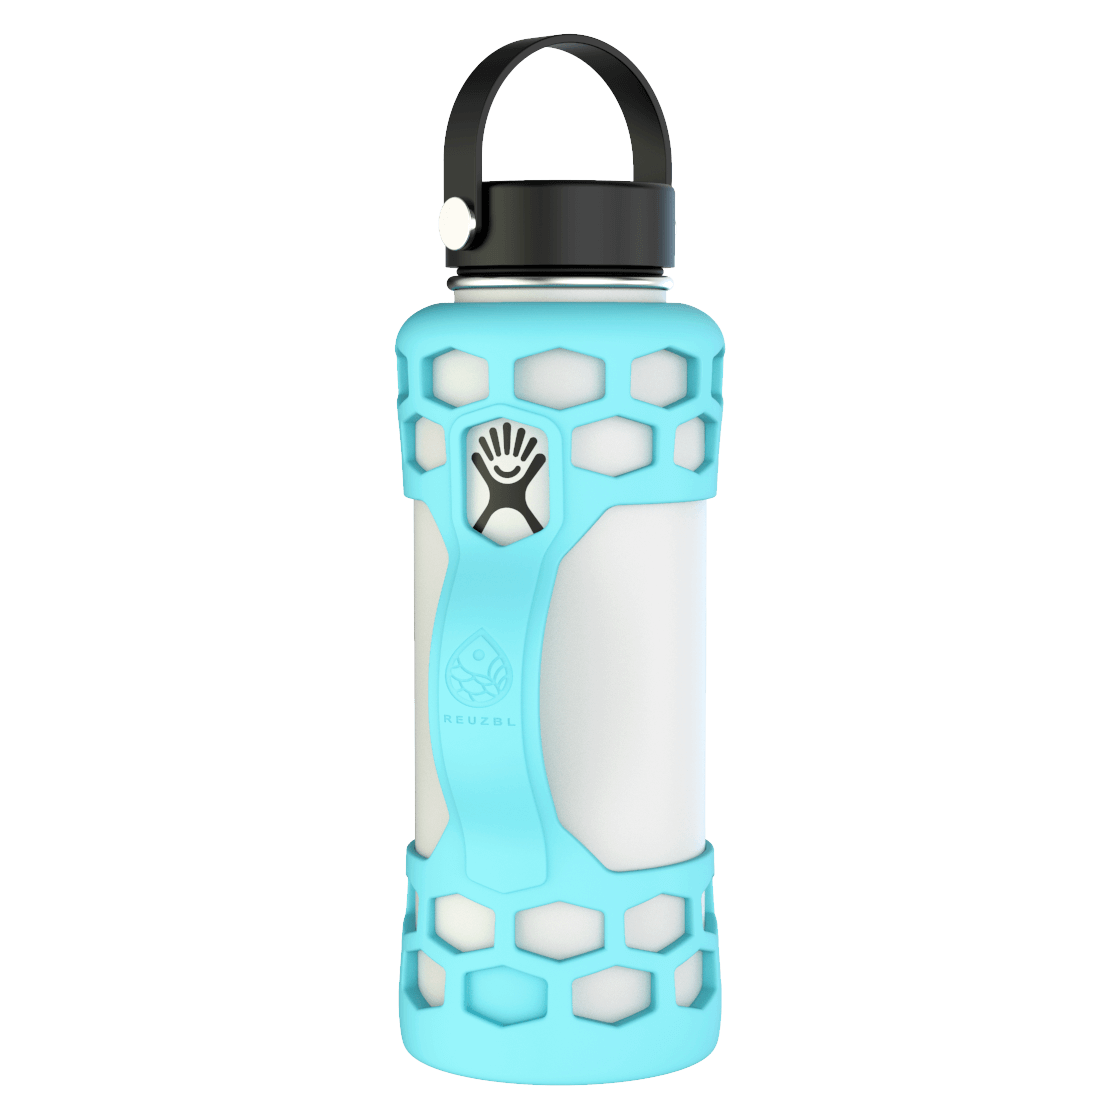 https://reuzbl.com/cdn/shop/products/40oz-water-bottle-sleeve-Frost-Front.png?v=1637353315